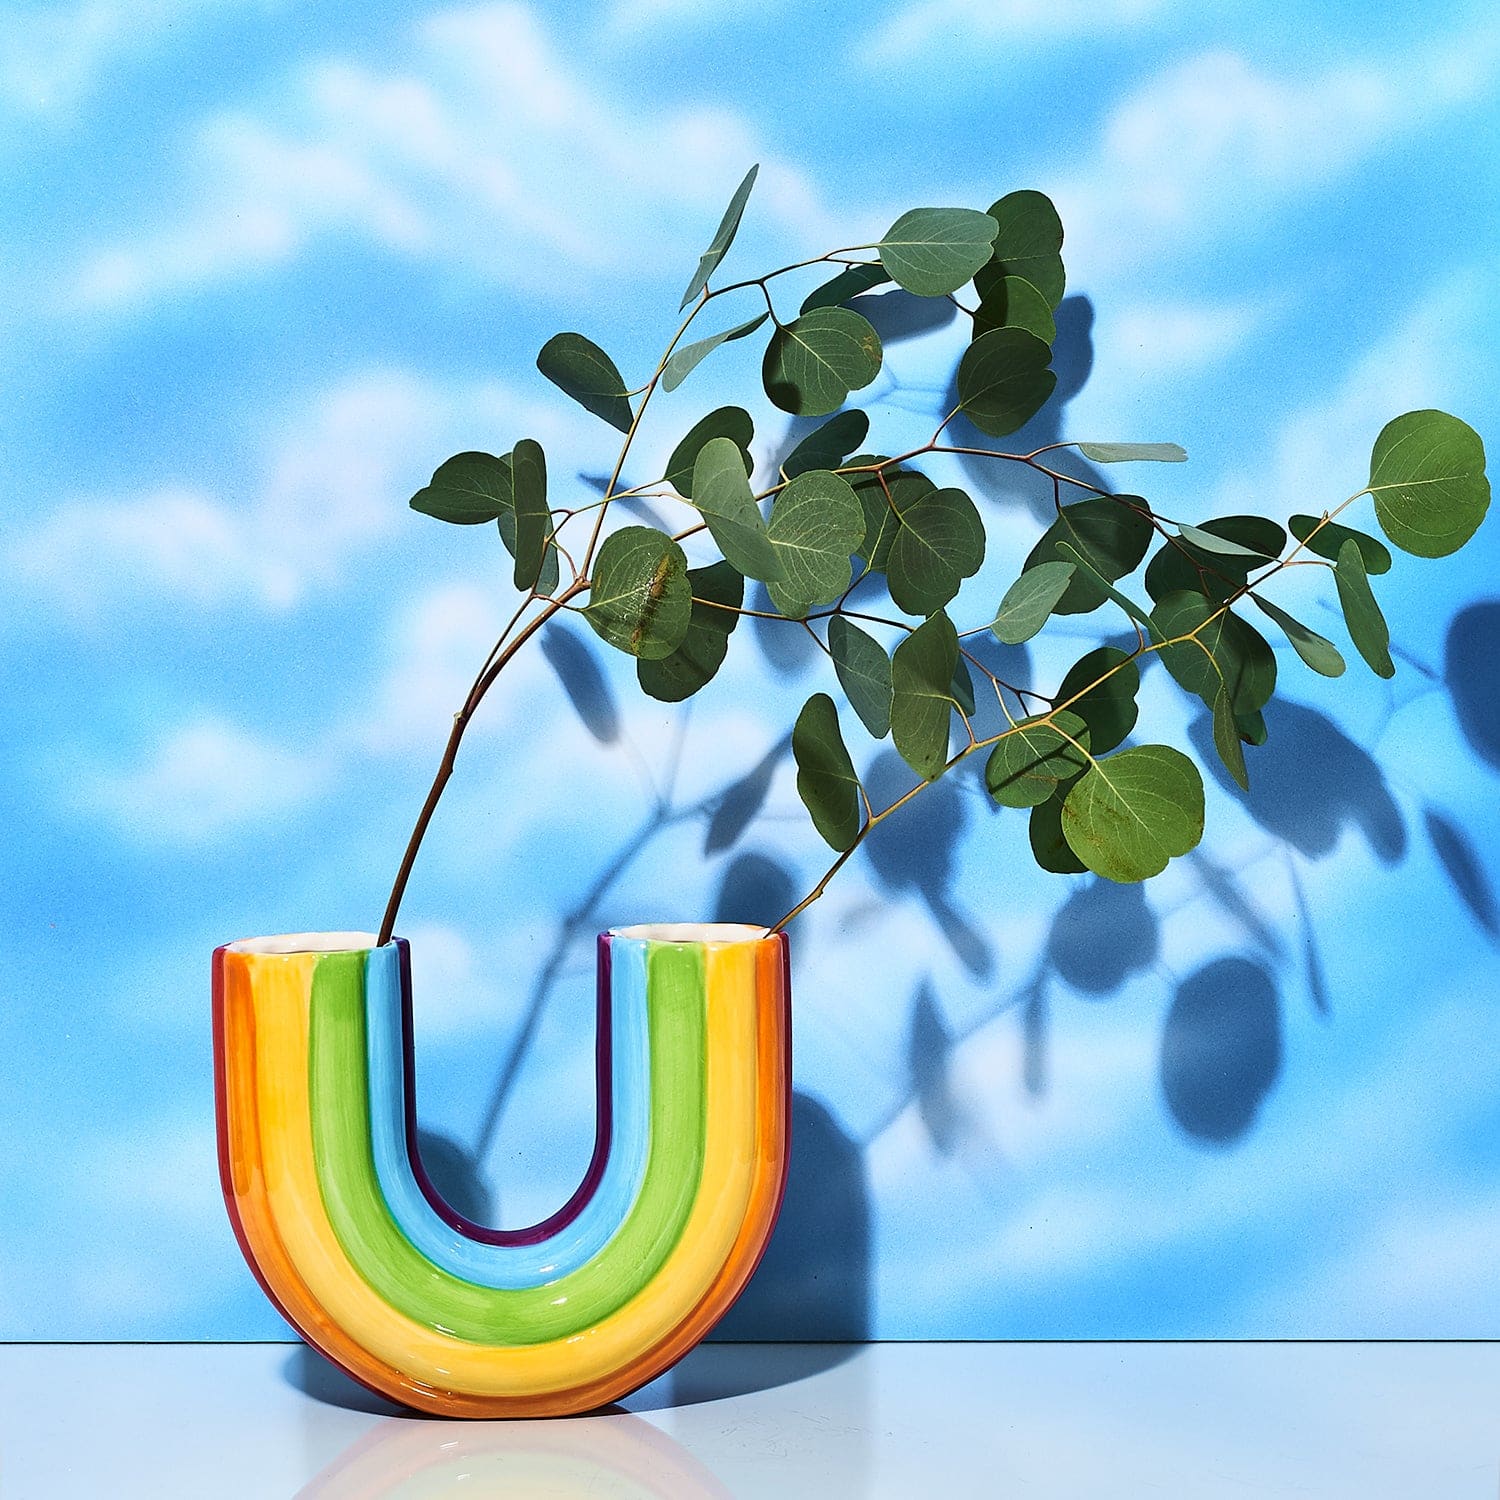 Rainbow Vase Ceramics - Doiy - Dopamine - Dropping soon - 